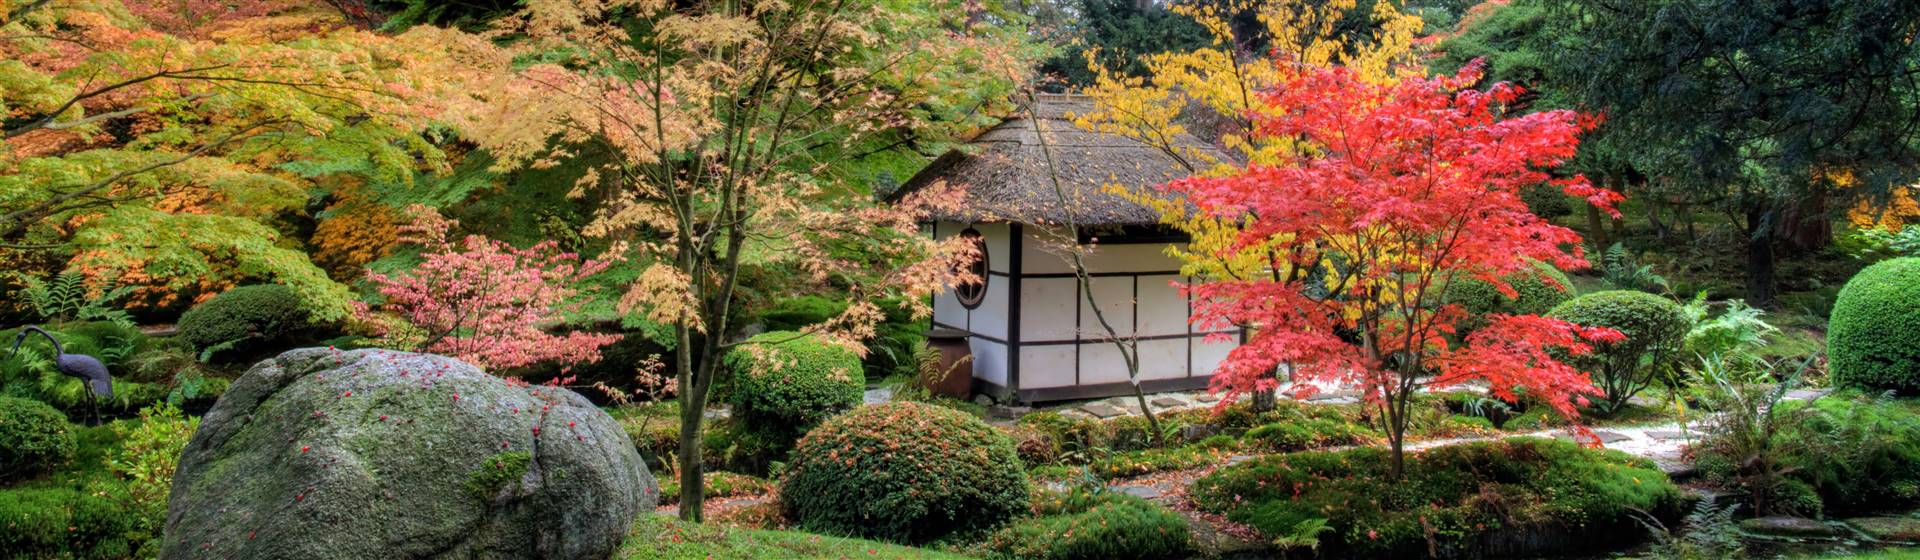 The Japanese Garden at Tatton Park Estate & Gardens in Cheshire